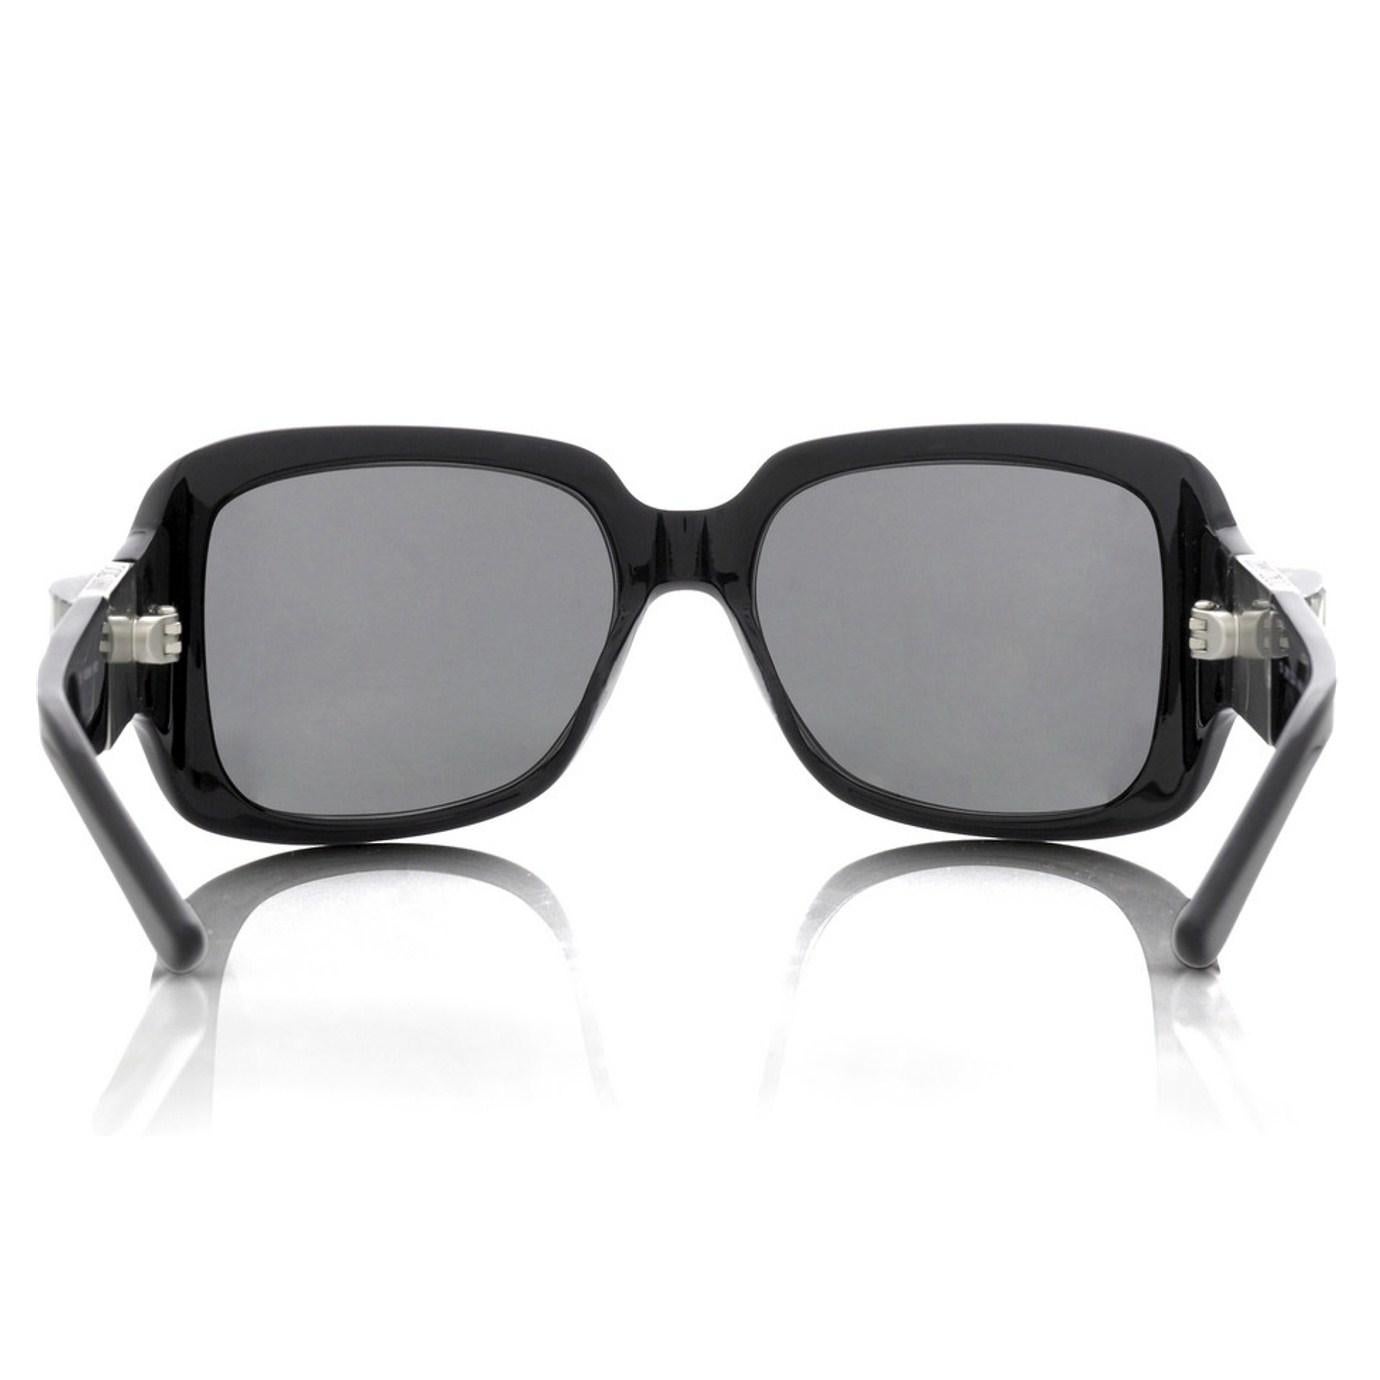 Neu Jimmy Choo Swarovski-Sonnenbrille mit Etui und Schachtel $595 (Beige)